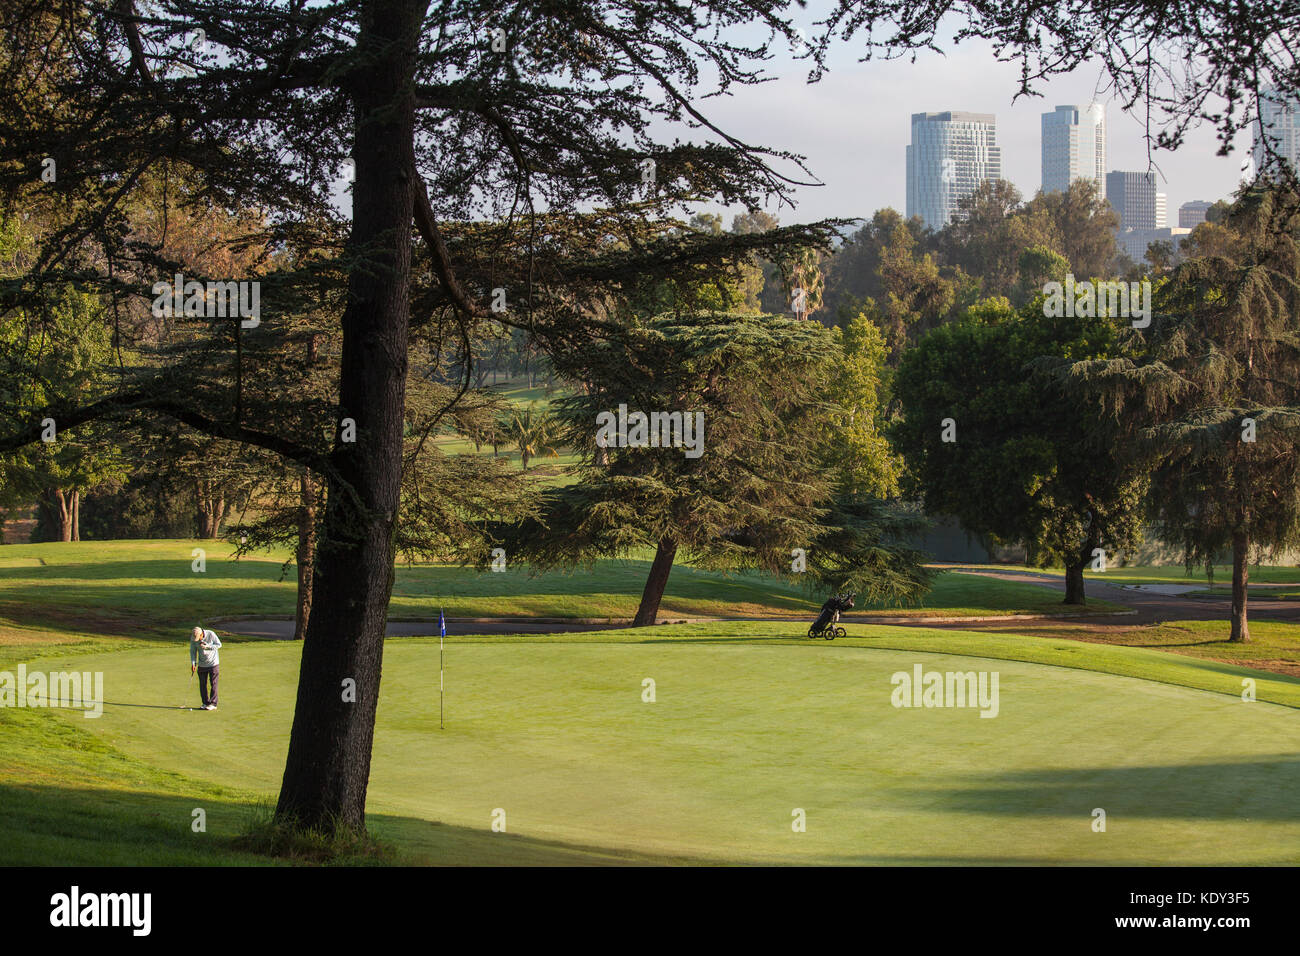 Rancho park golf course, golf et aménagement paysager sont un important utilisateur de l'eau. Los Angeles, Californie, USA Banque D'Images